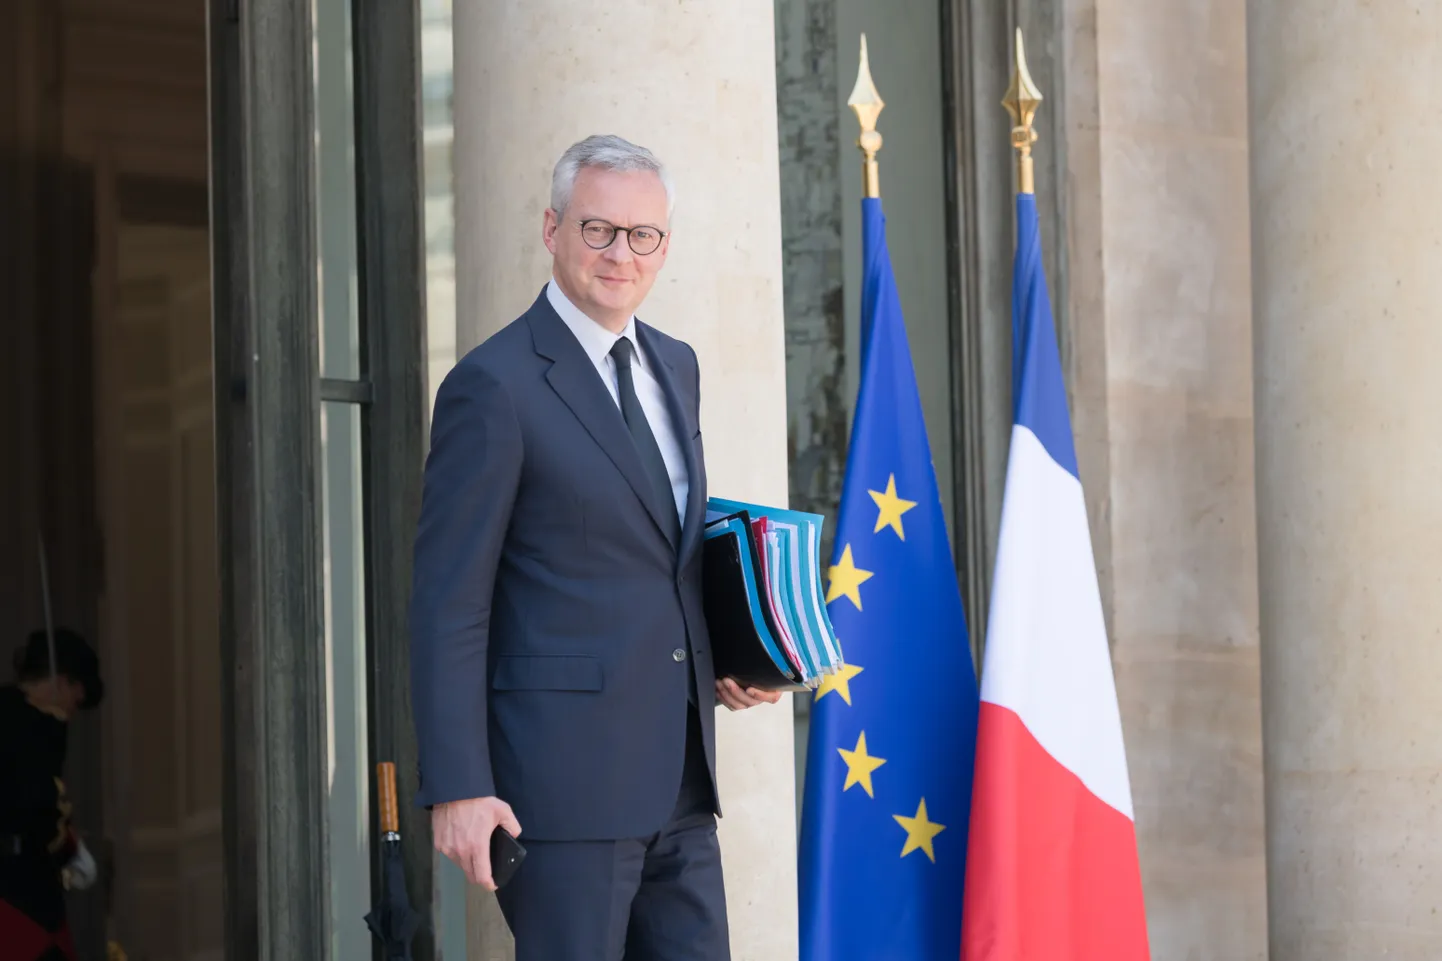 Prantsuse majandusminister Bruno Le Maire ennustas riigi selle aasta majanduslanguseks 11 protsenti.